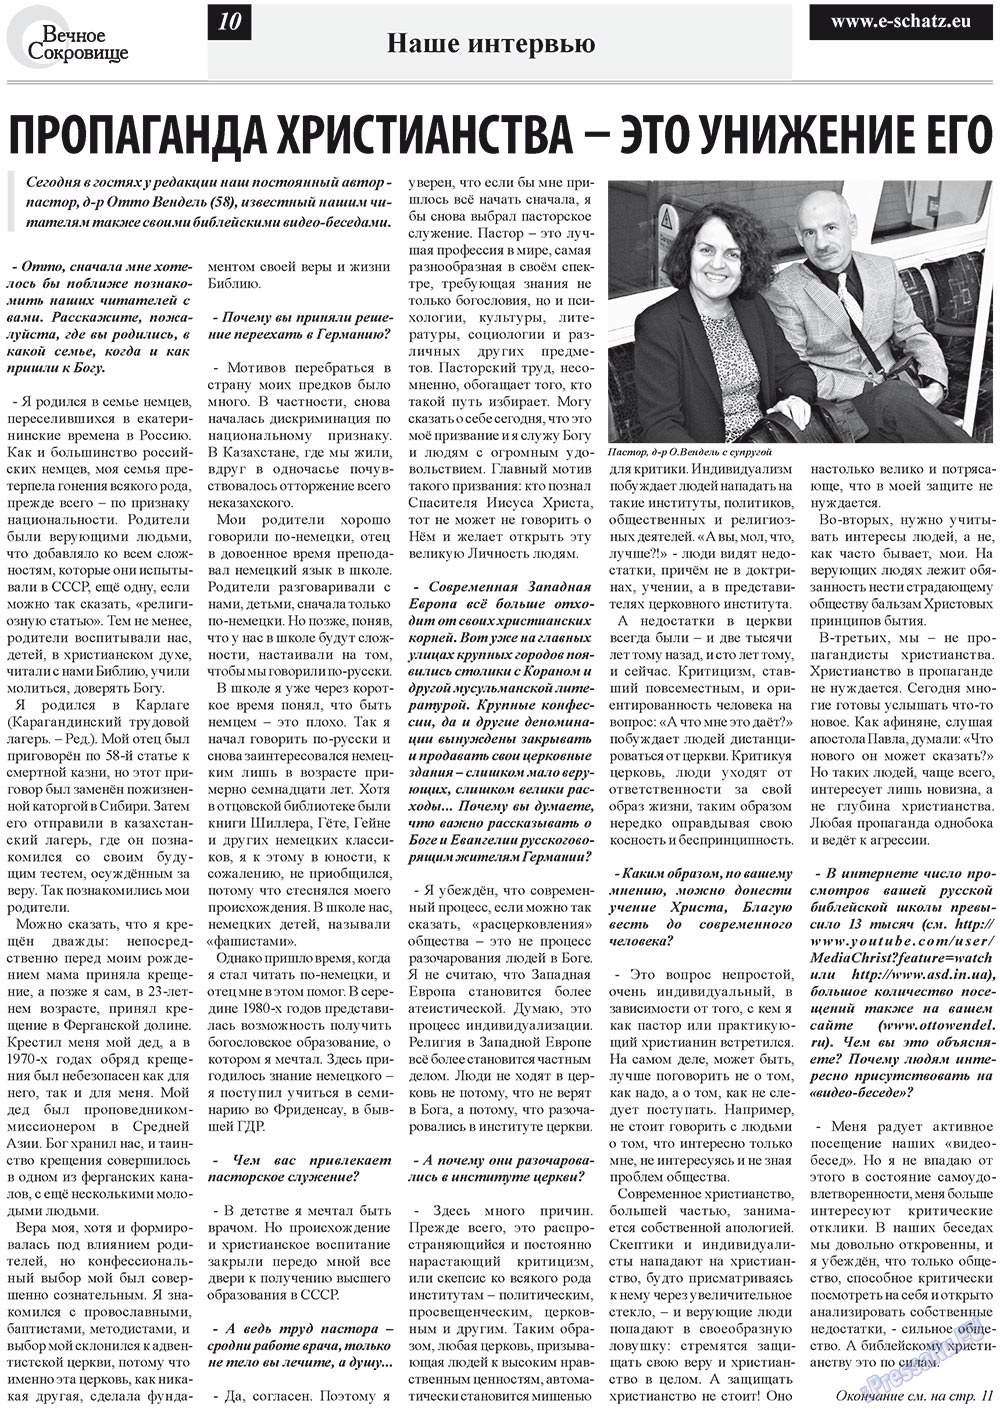 Вечное сокровище, газета. 2012 №4 стр.10